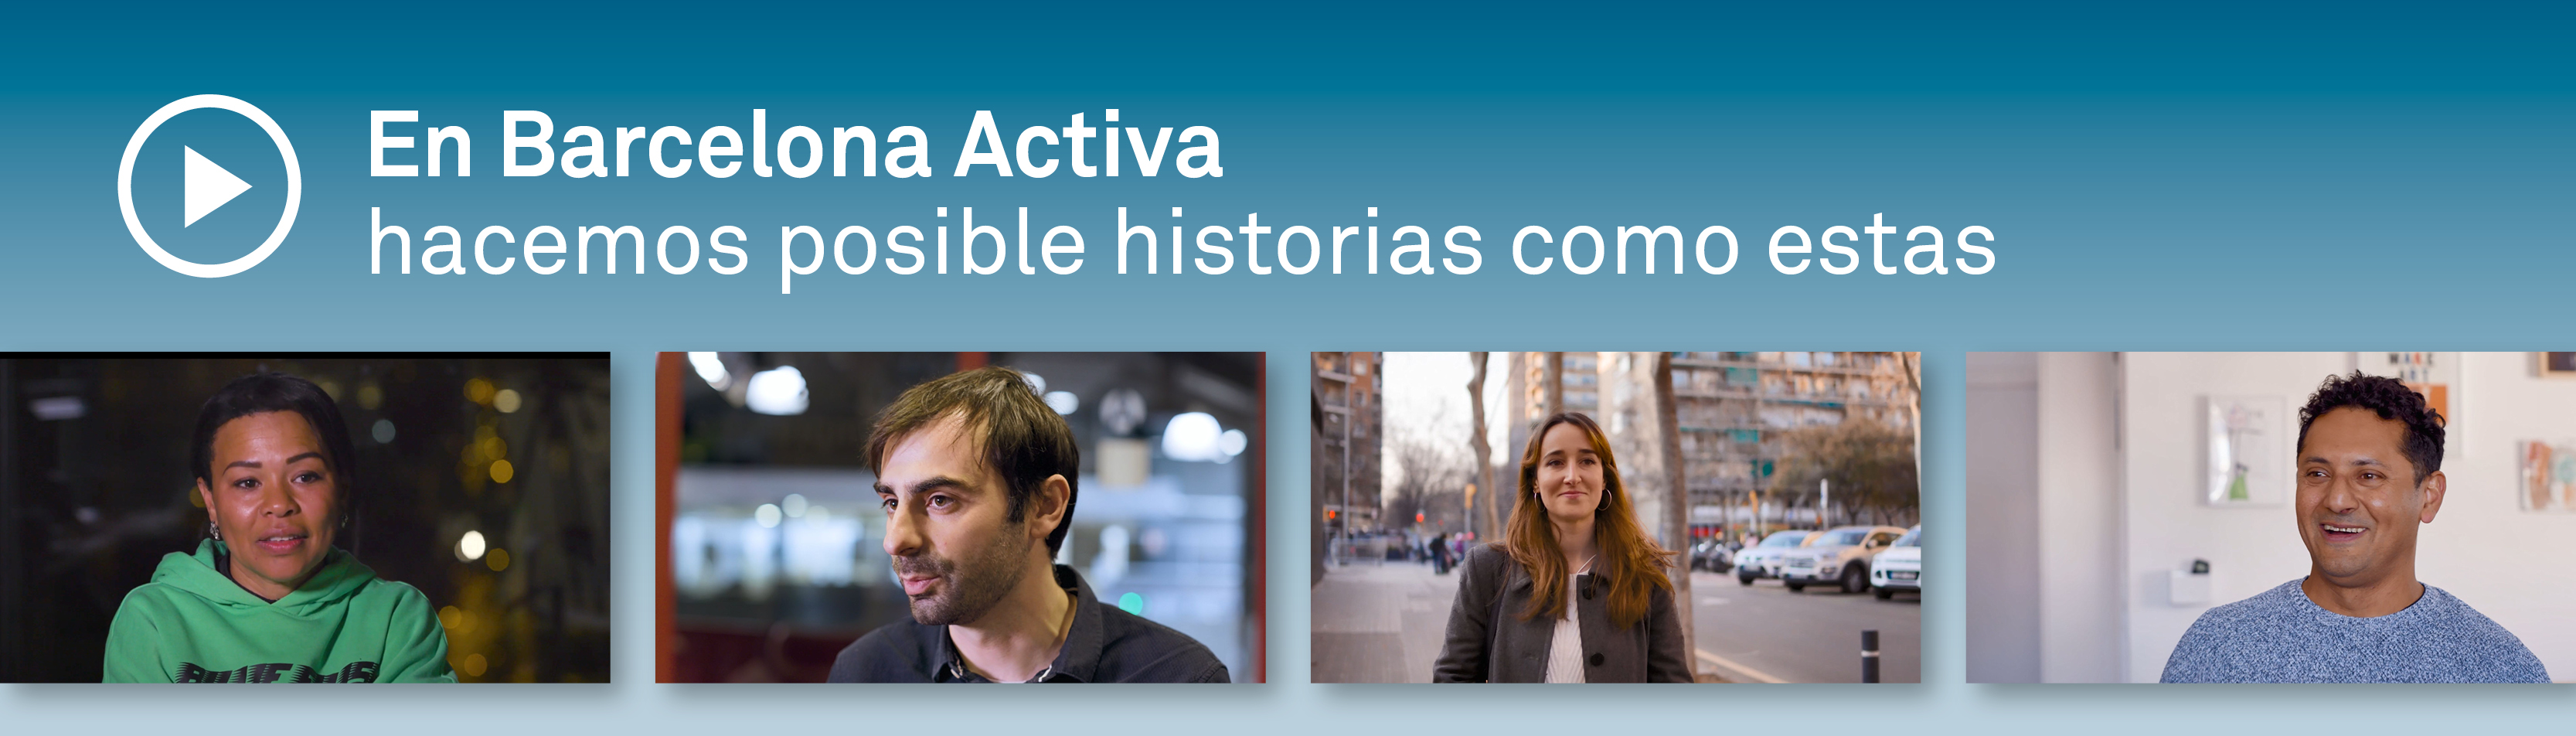 Historias en Barcelona Activa